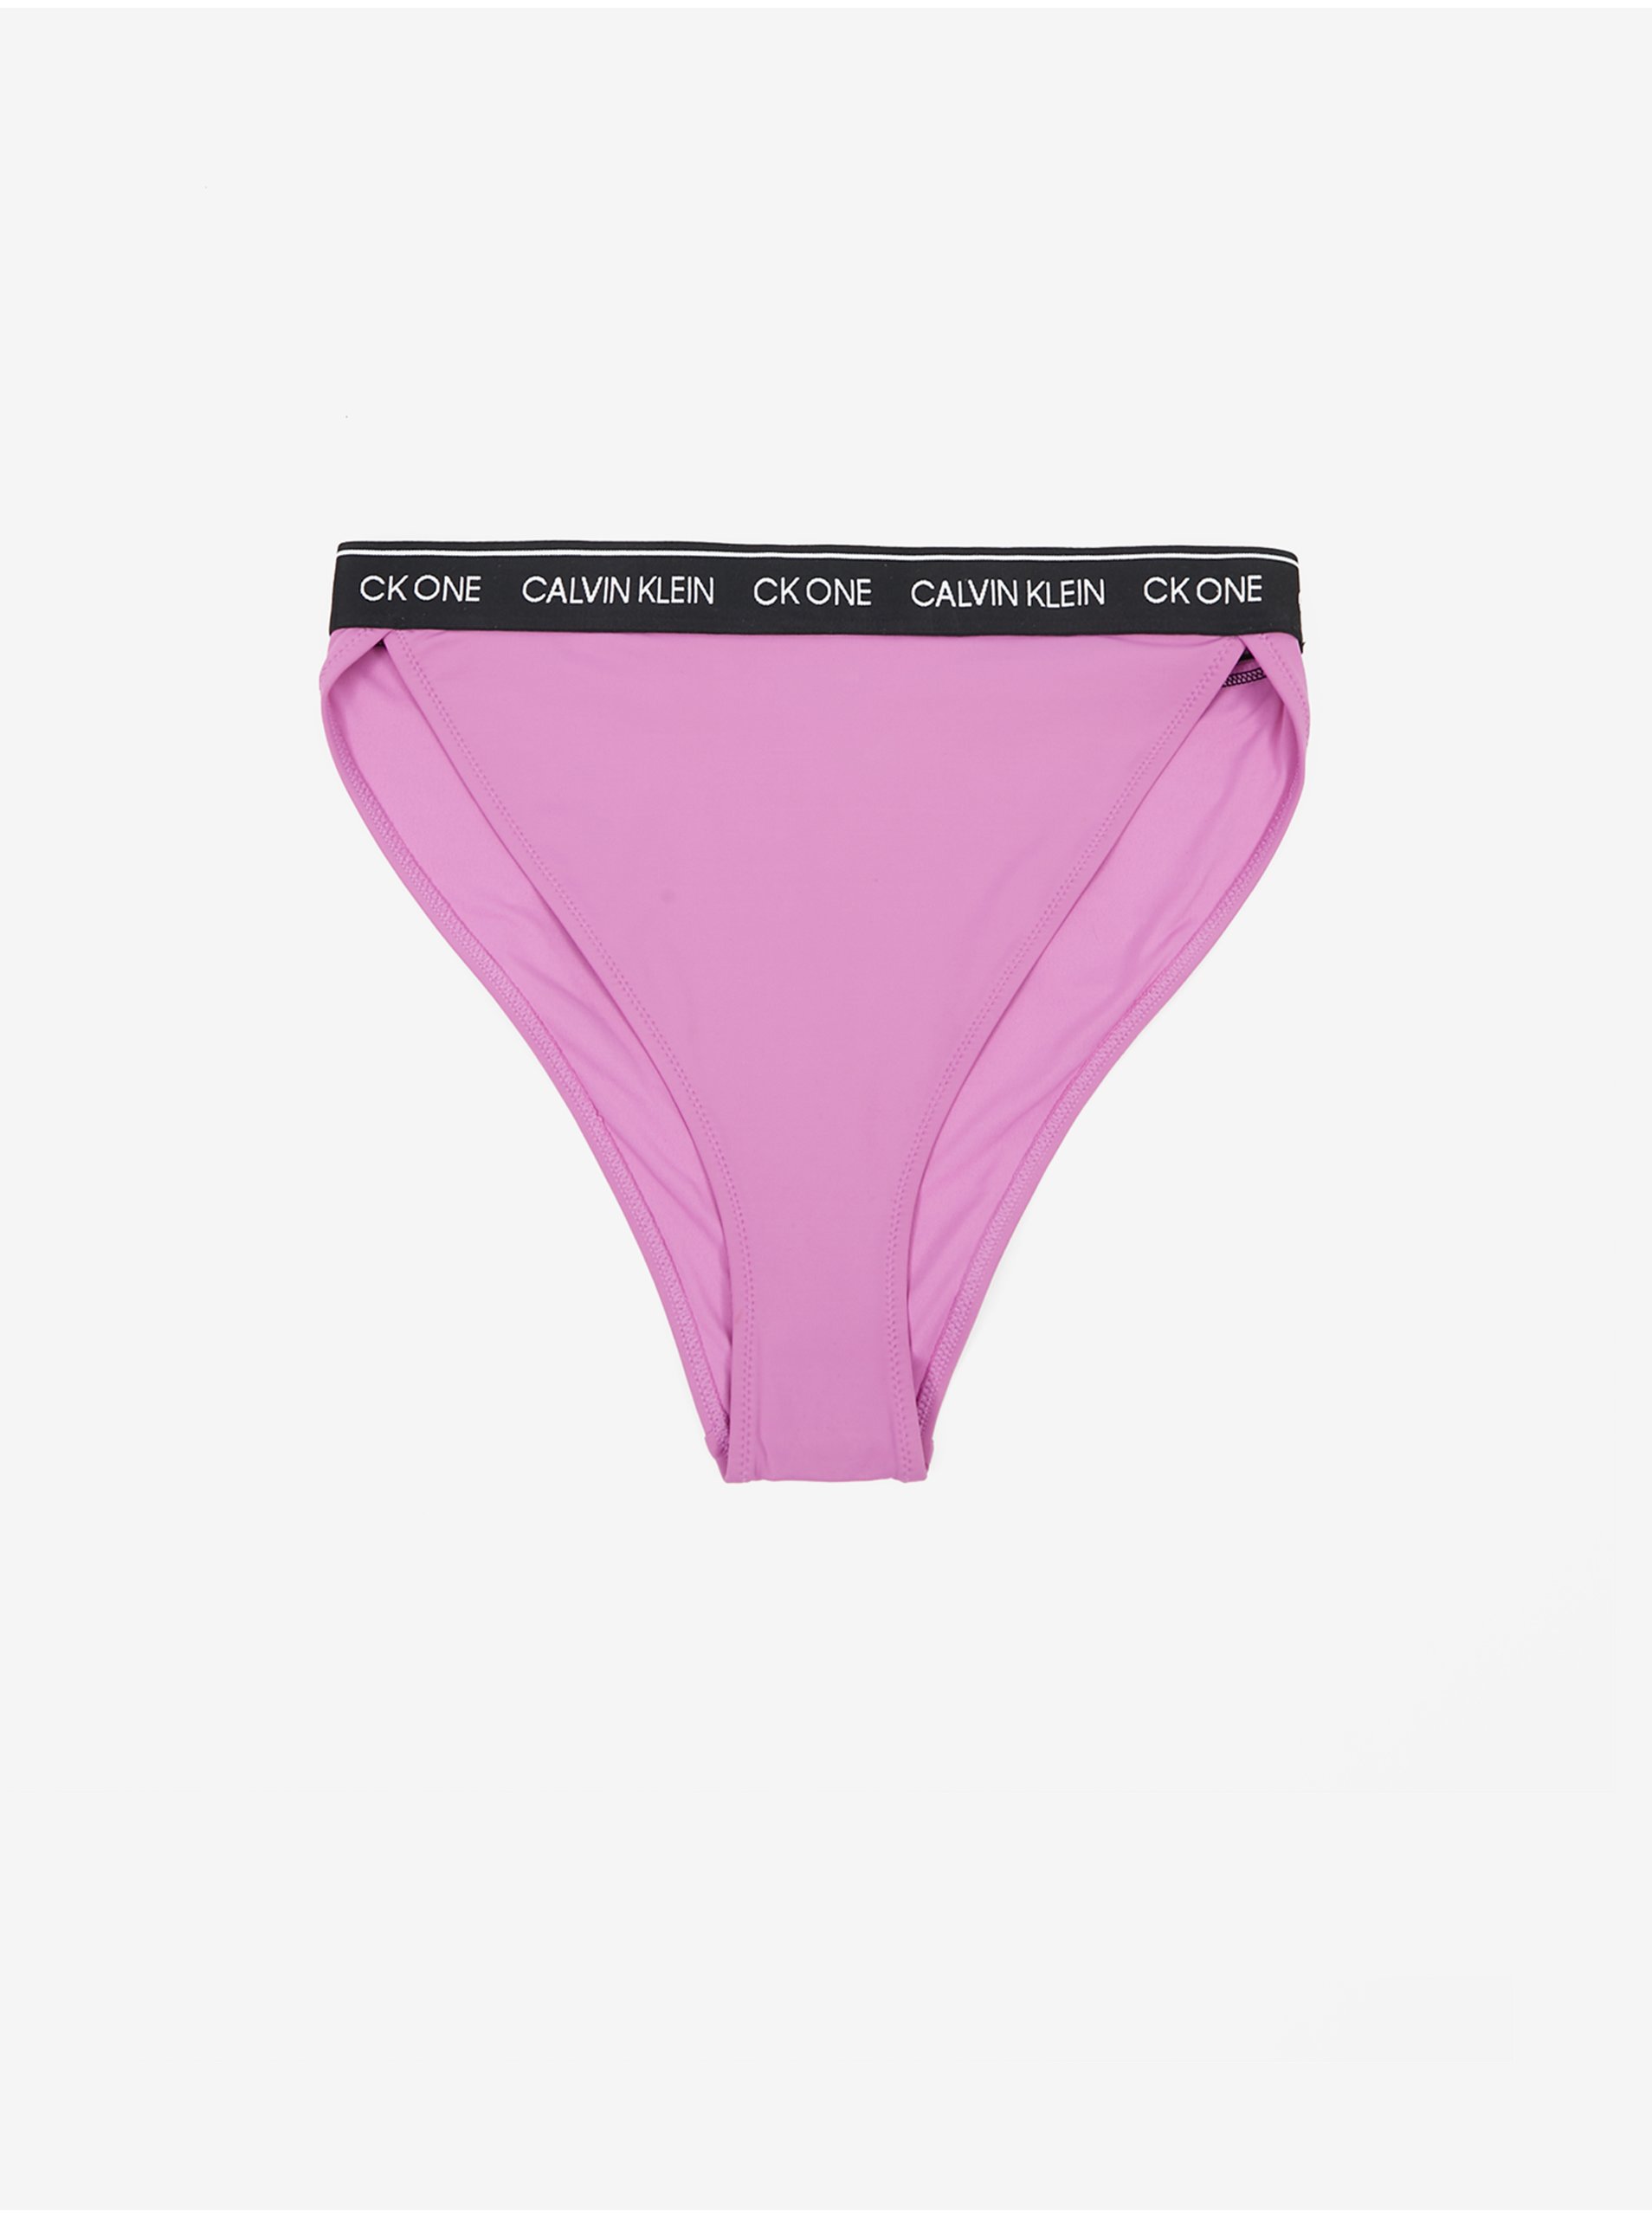 Lacno Svetlofialový dámsky spodný diel plaviek Calvin Klein Underwear